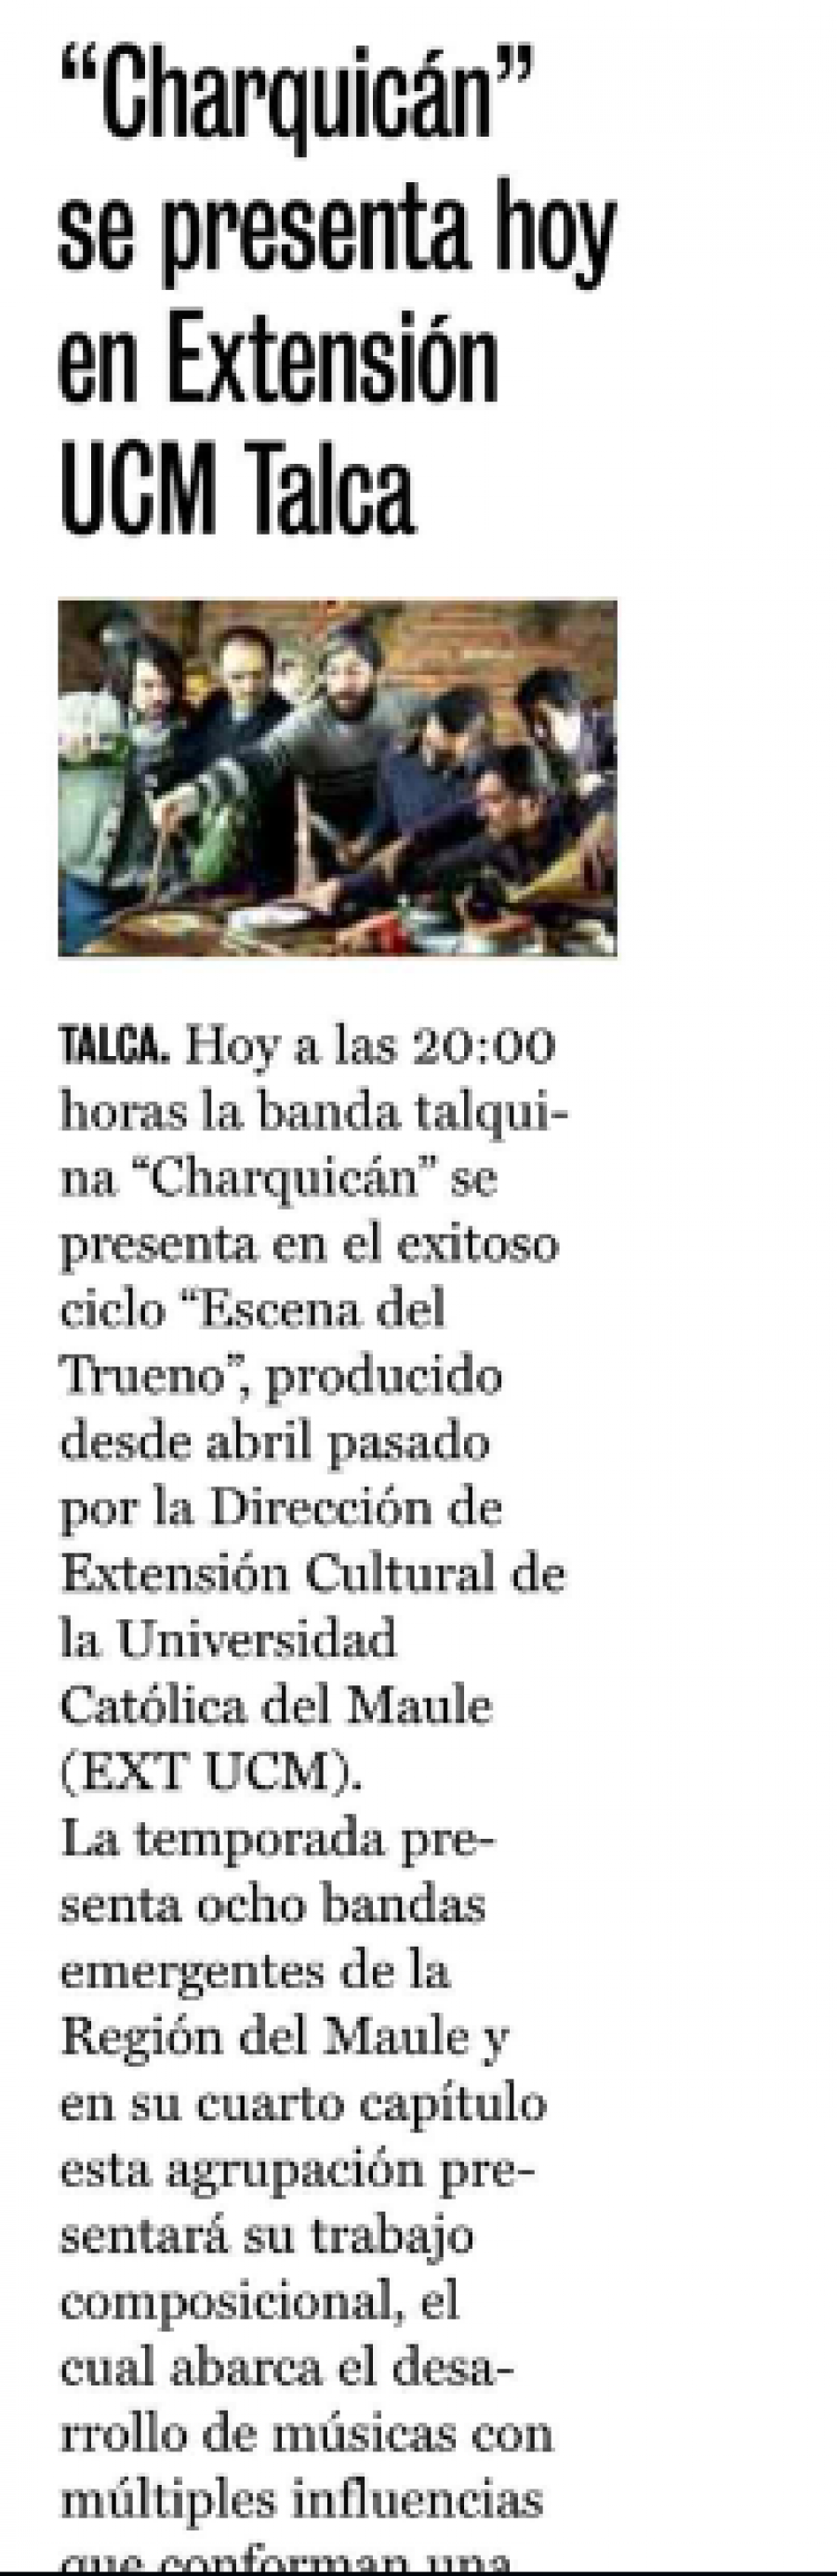 06 de julio en Diario La Prensa: “Charquicán” se presenta hoy en Extensión UCM Talca”